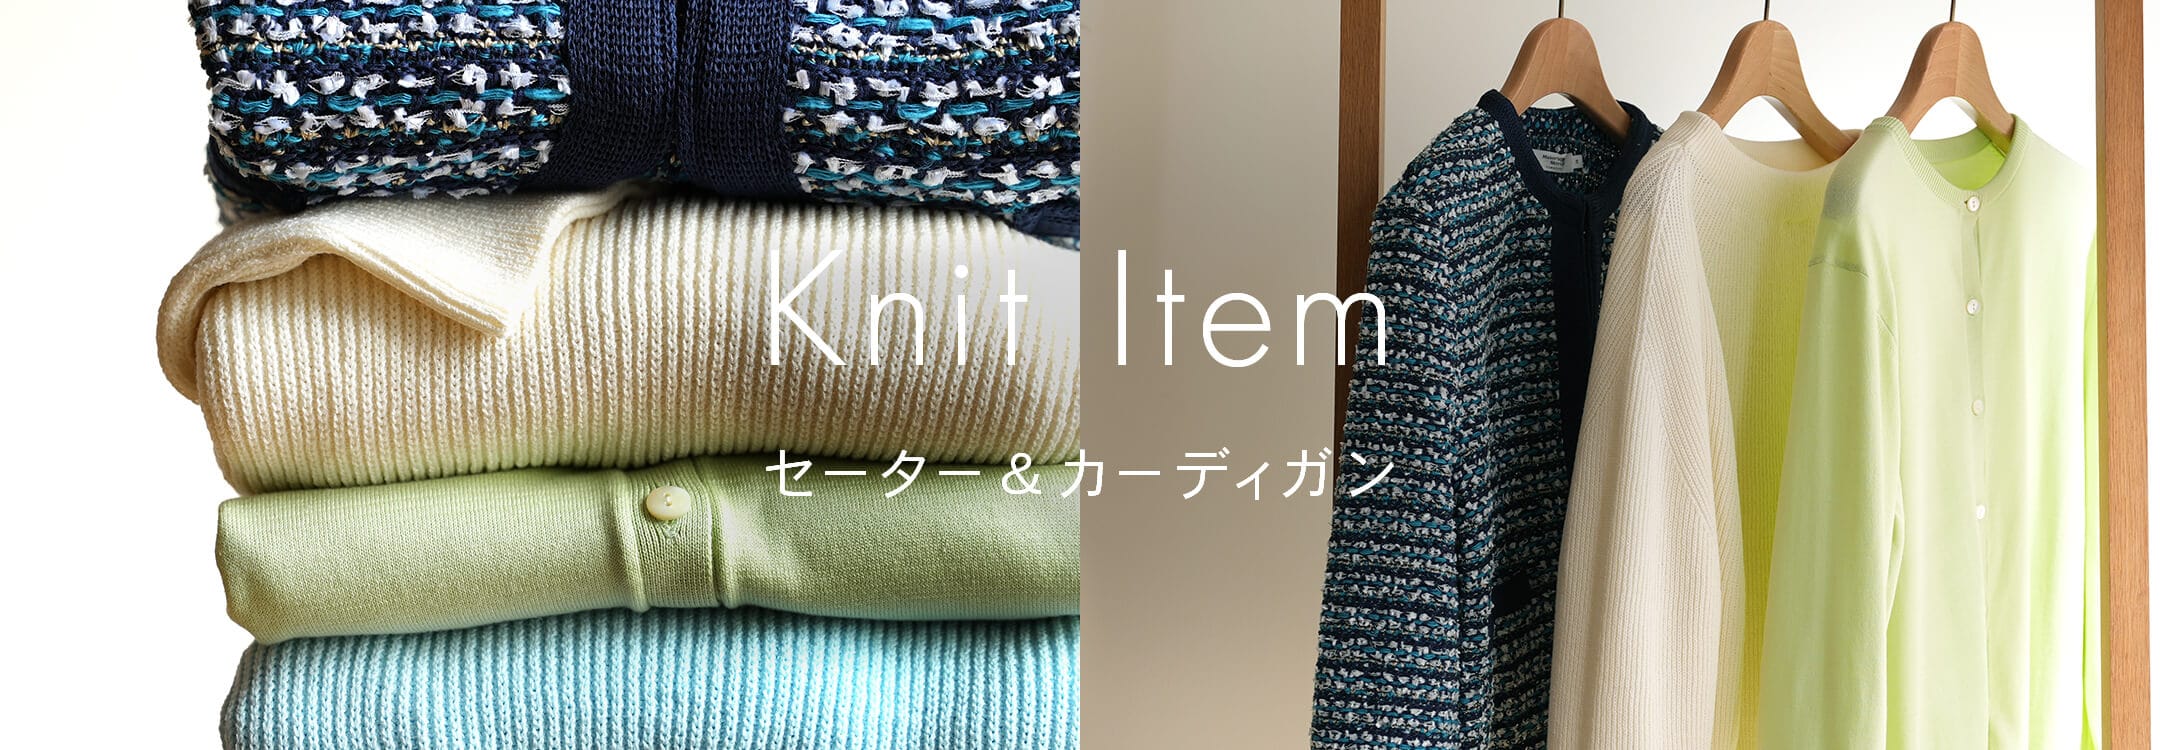 【レディース】Knit Item セーター&カーディガン